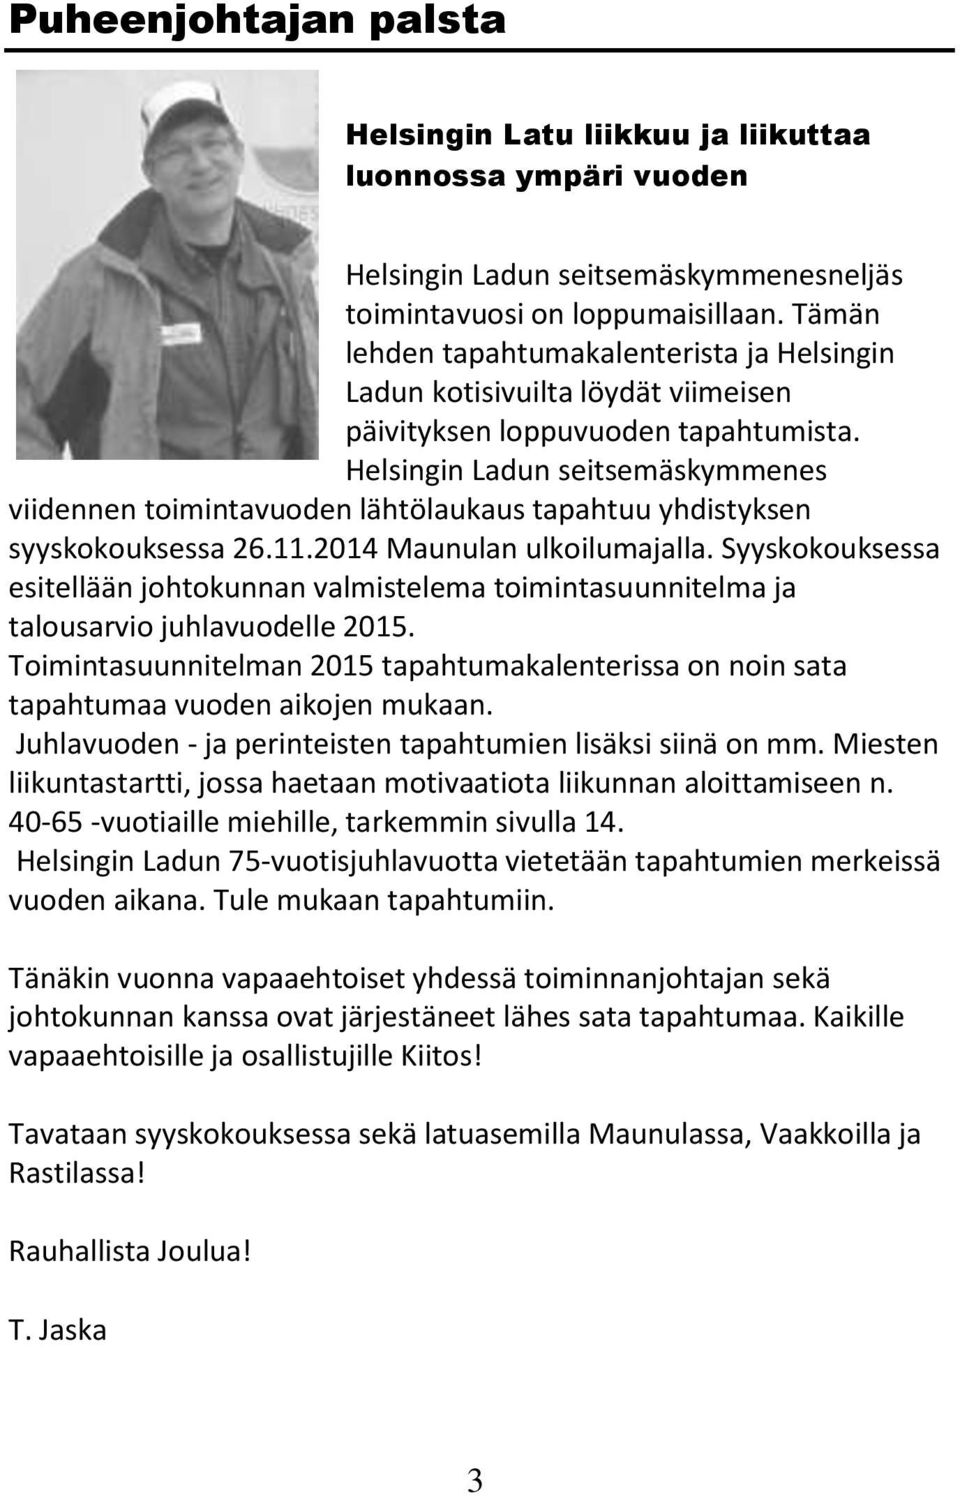 Helsingin Ladun seitsemäskymmenes viidennen toimintavuoden lähtölaukaus tapahtuu yhdistyksen syyskokouksessa 26.11.2014 Maunulan ulkoilumajalla.